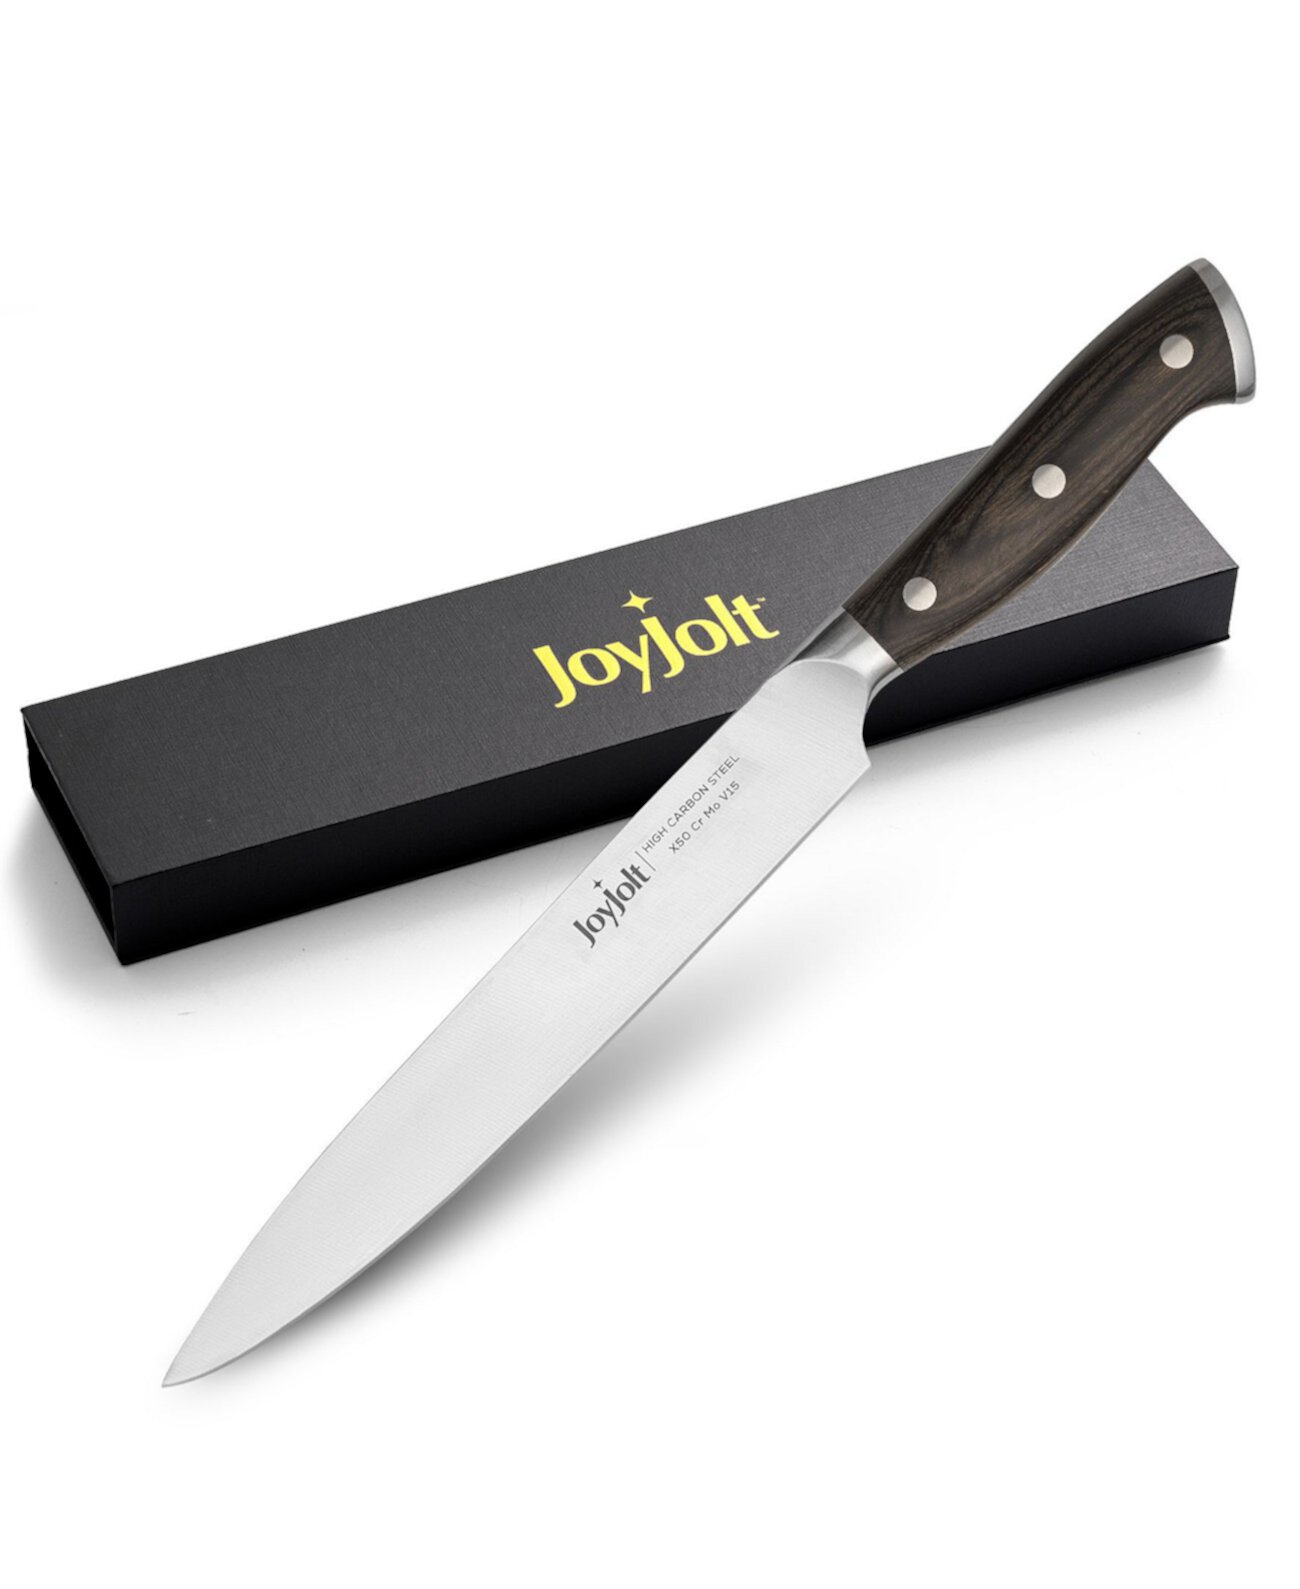 8" Slicing Knife High Carbon Steel Kitchen Knife JoyJolt